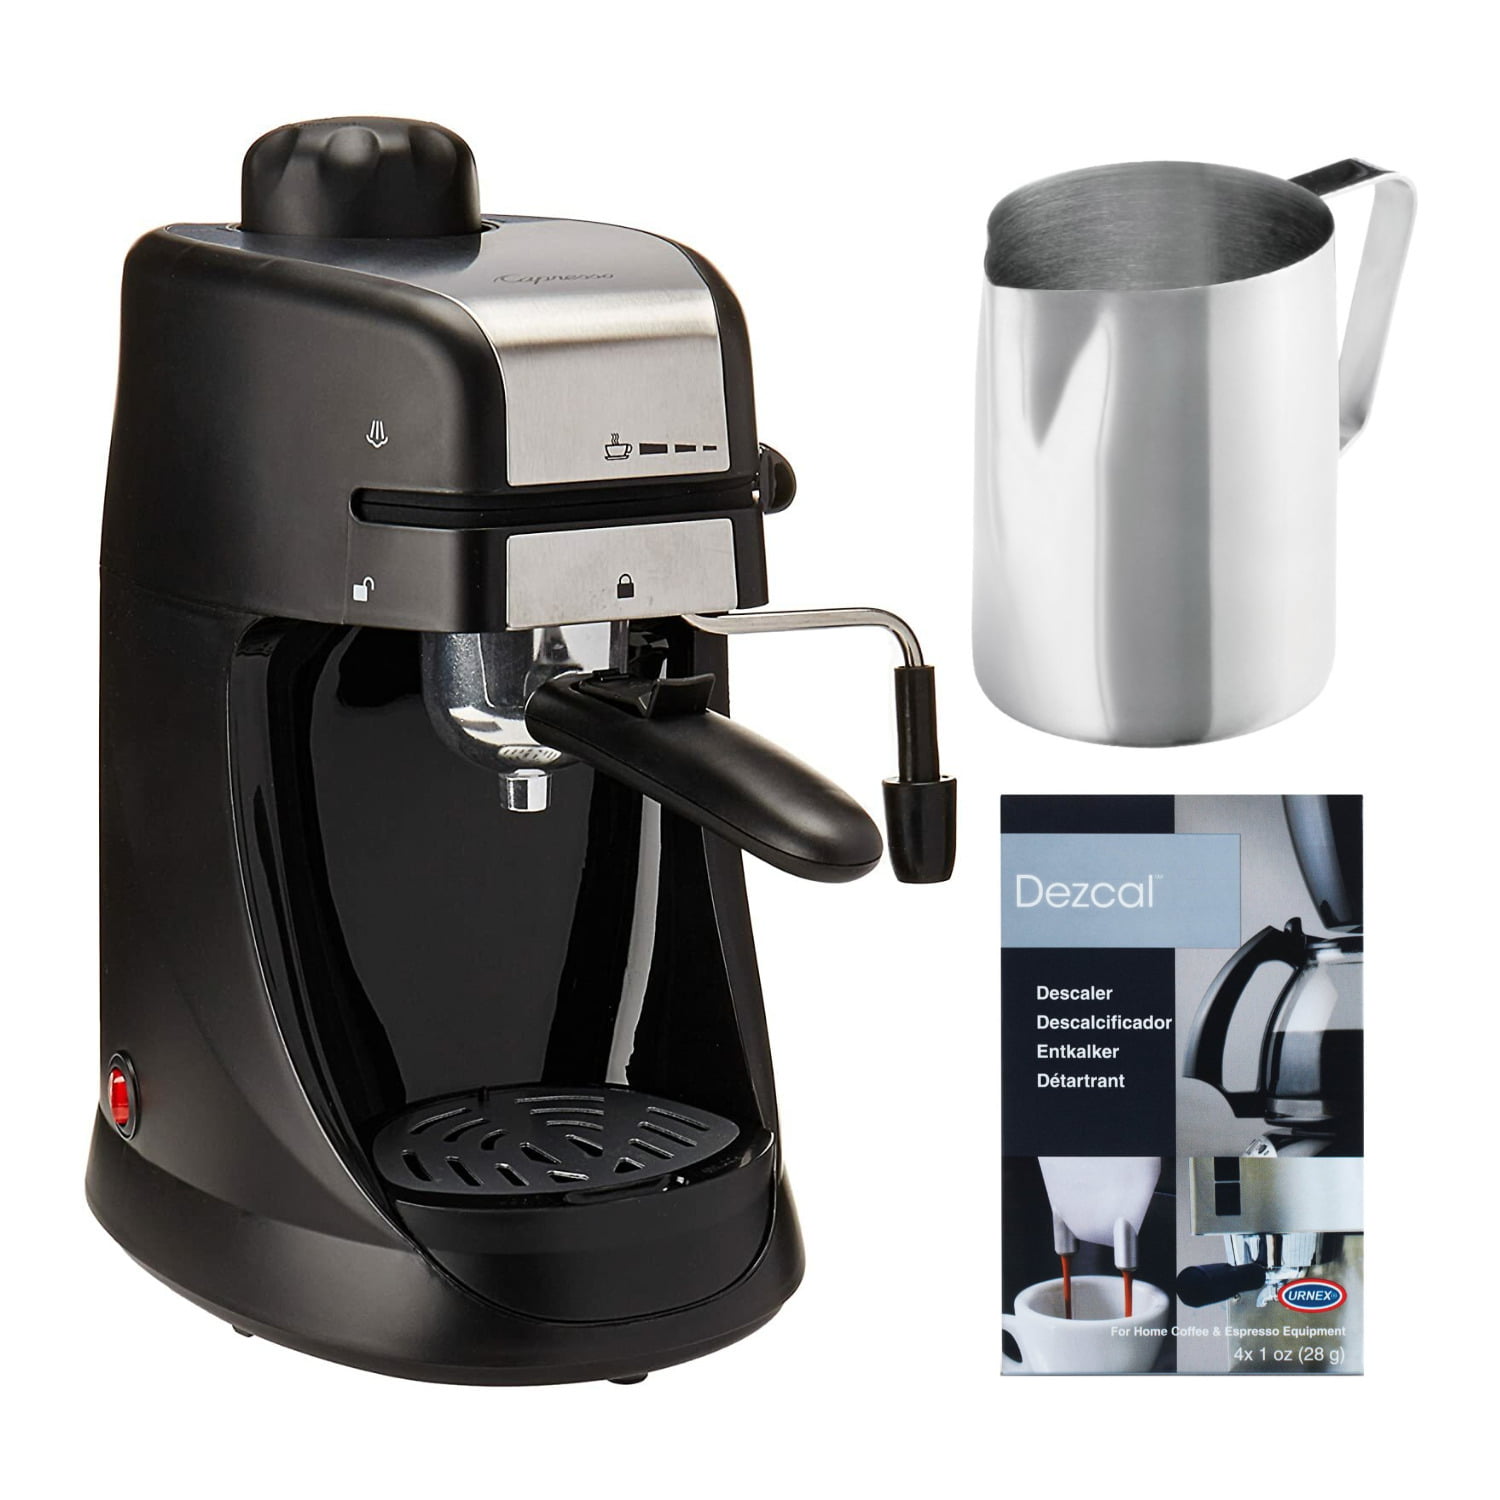 Capresso Steam Pro Espresso and Cappuccino Machine Capresso Kitchenware 304